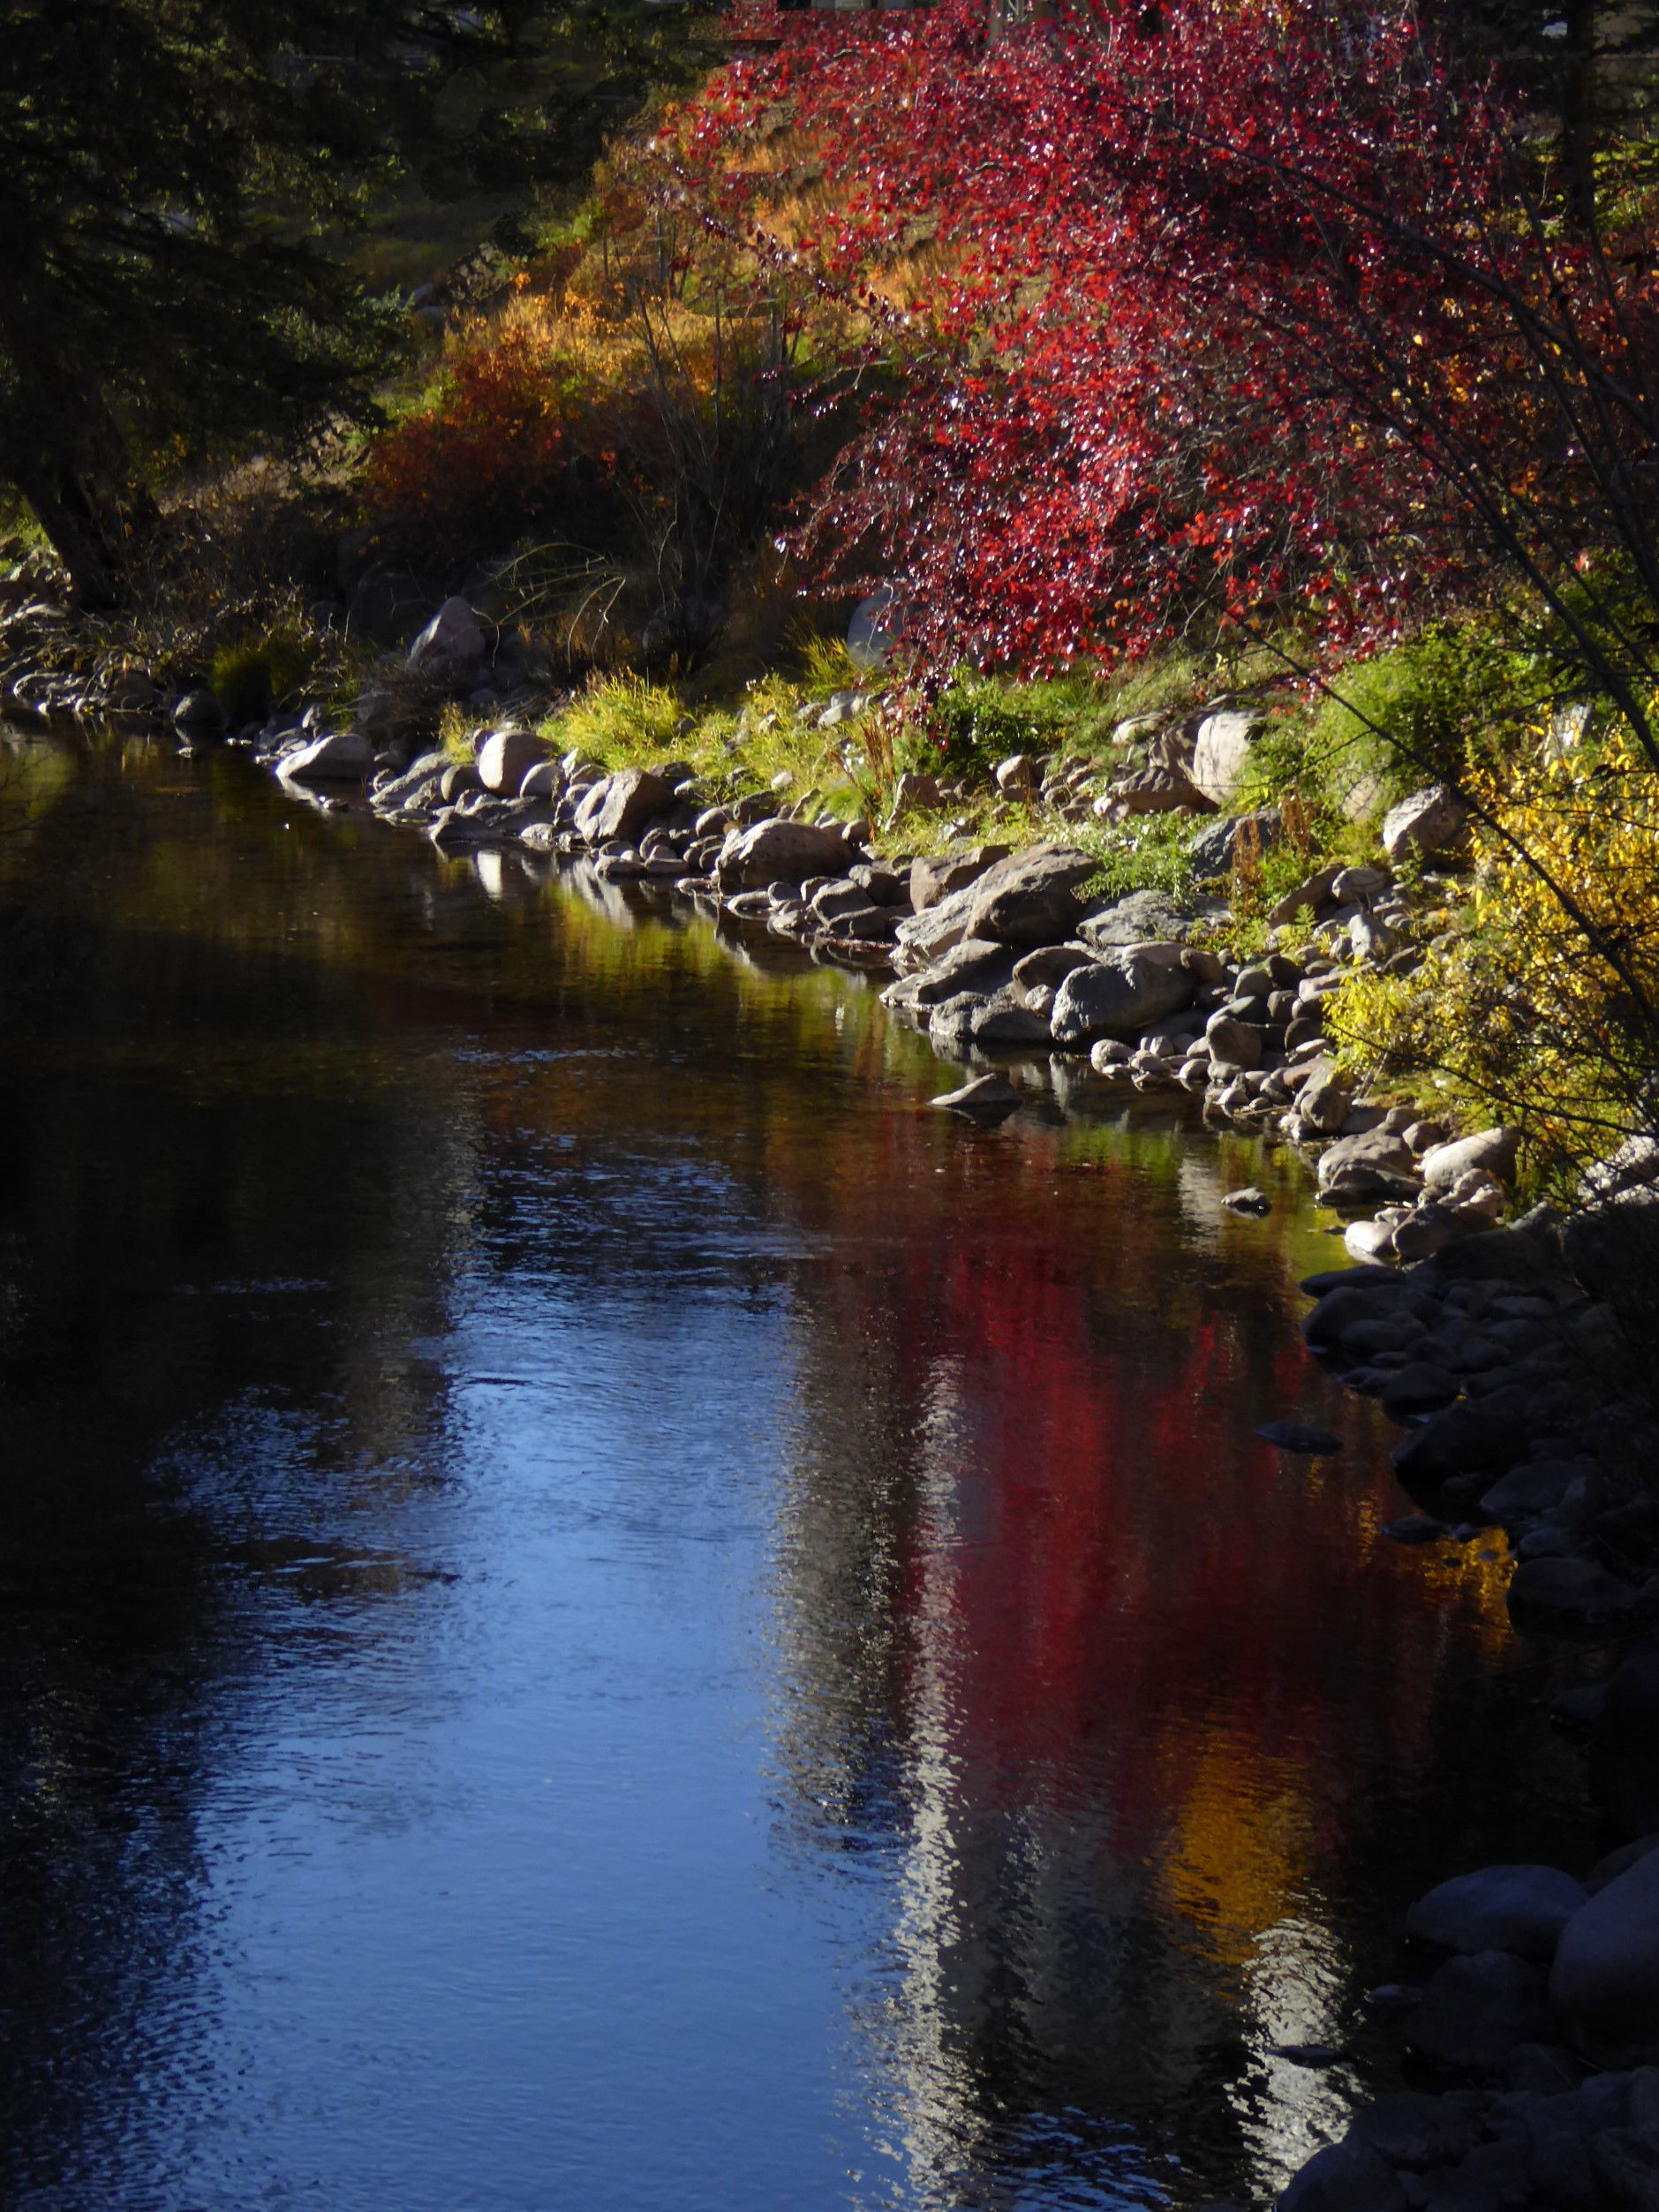 Stream in Autumn Splendor